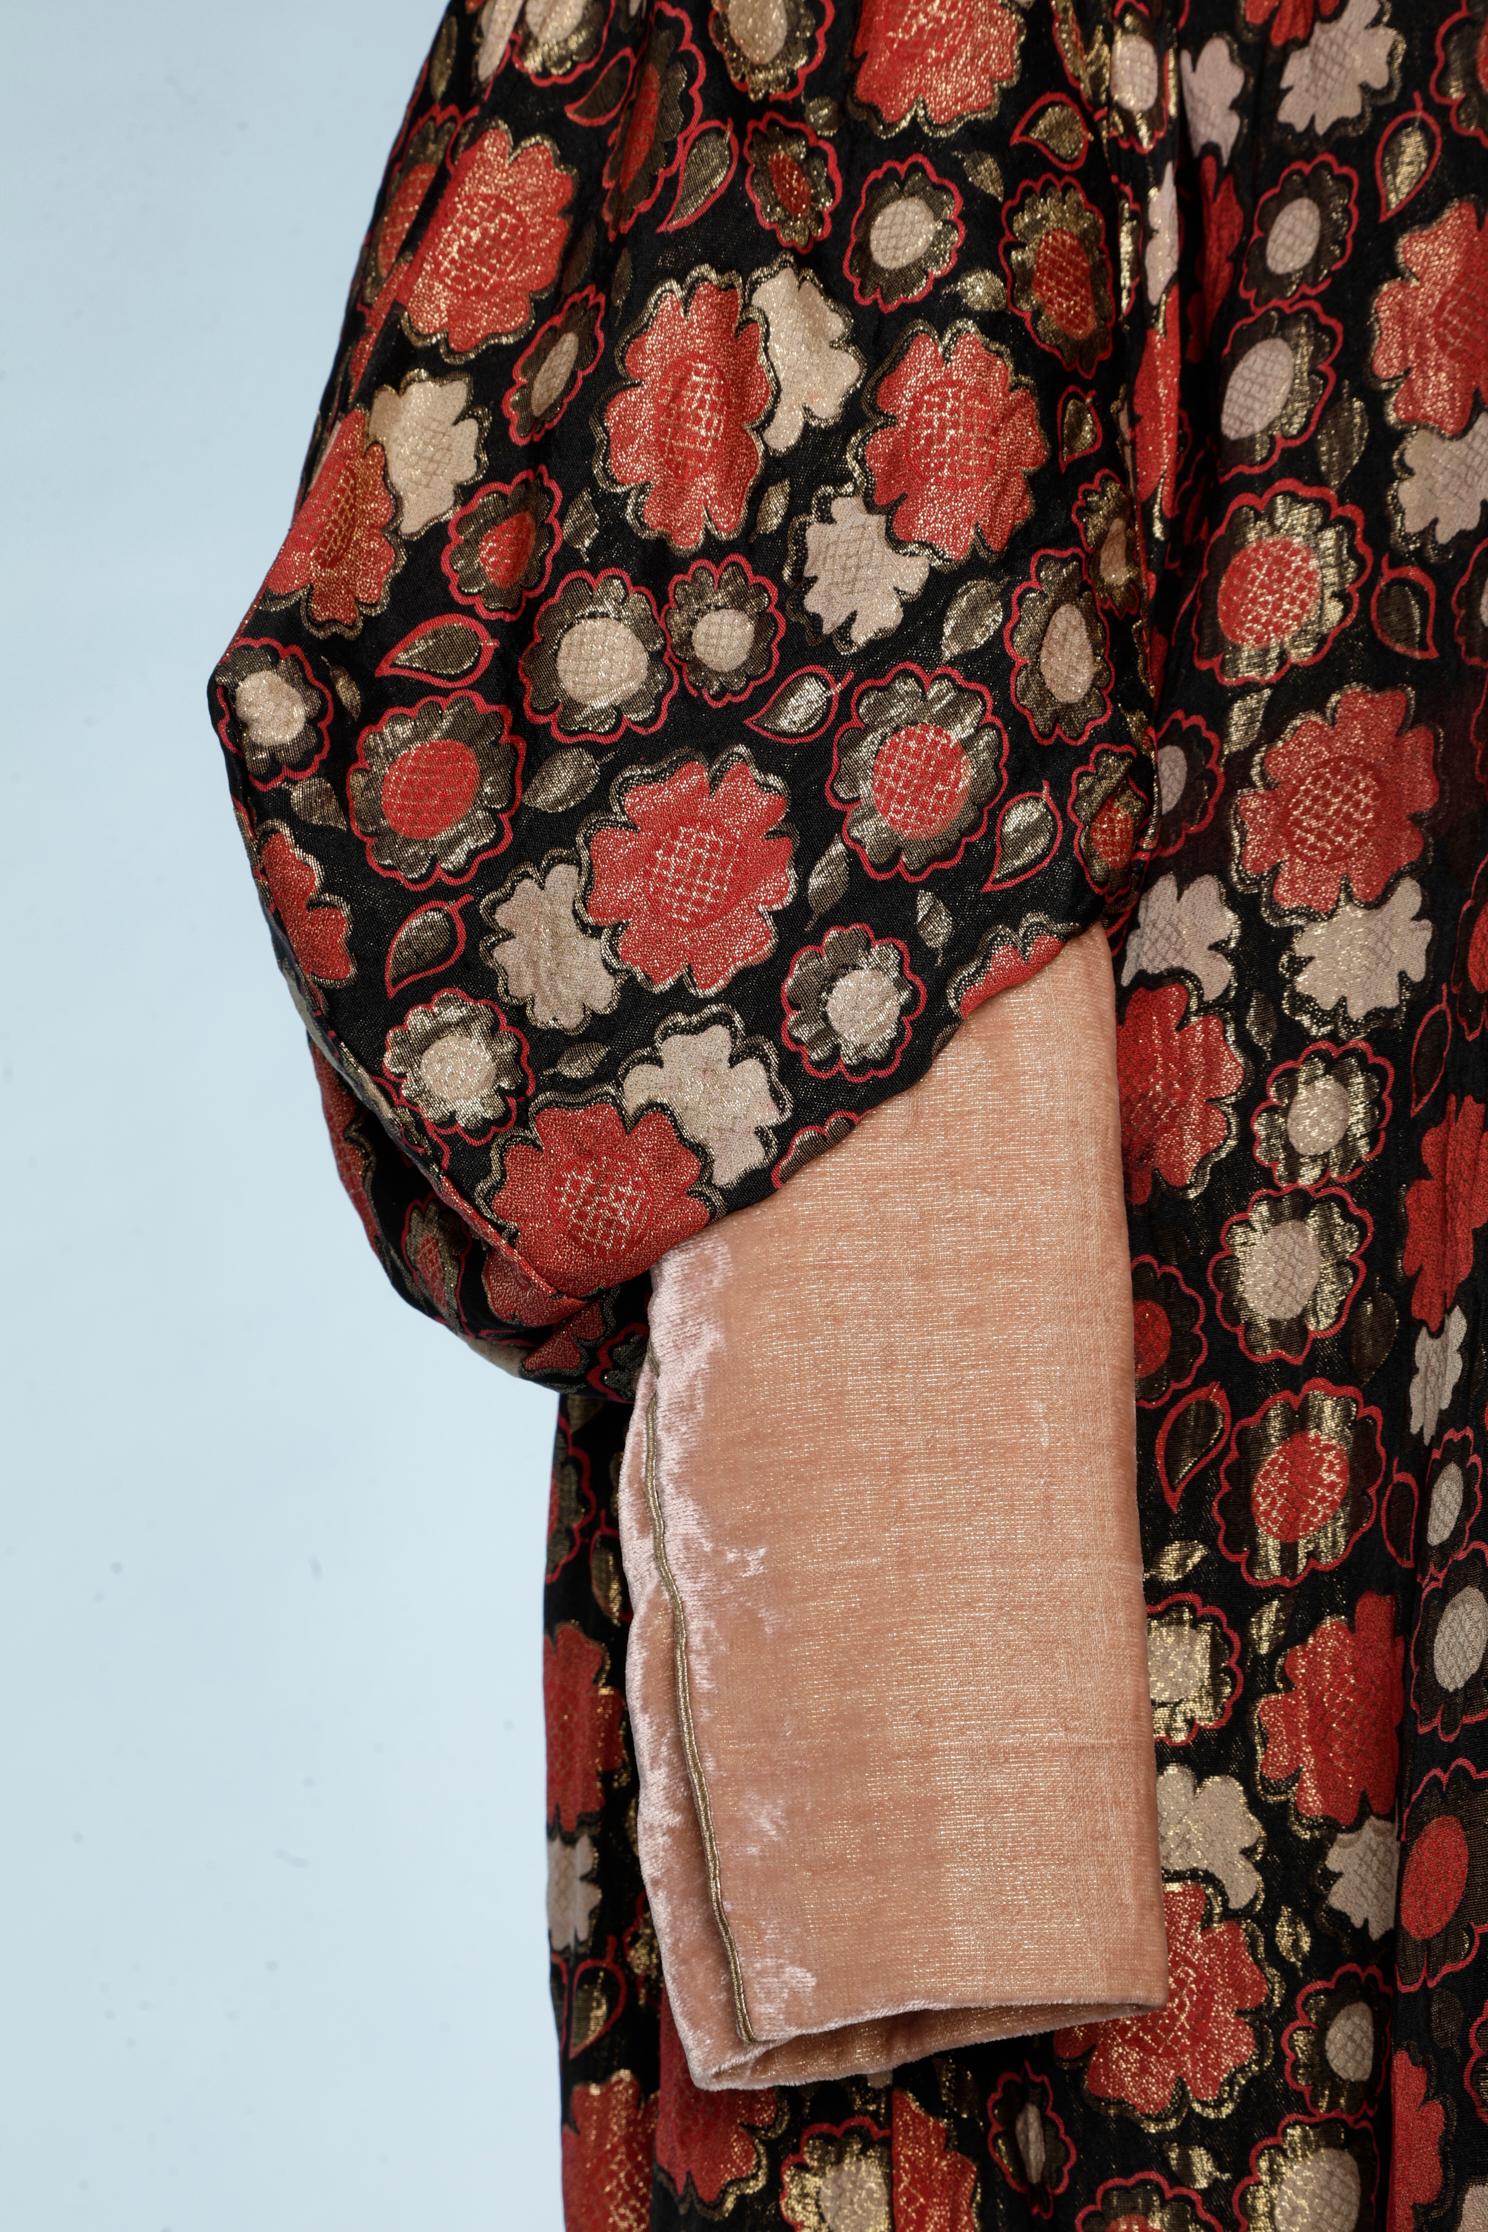 Manteau du soir en jacquard de lurex et velours de couleur saumon et or Circa 1925. La doublure est en soie saumon. 